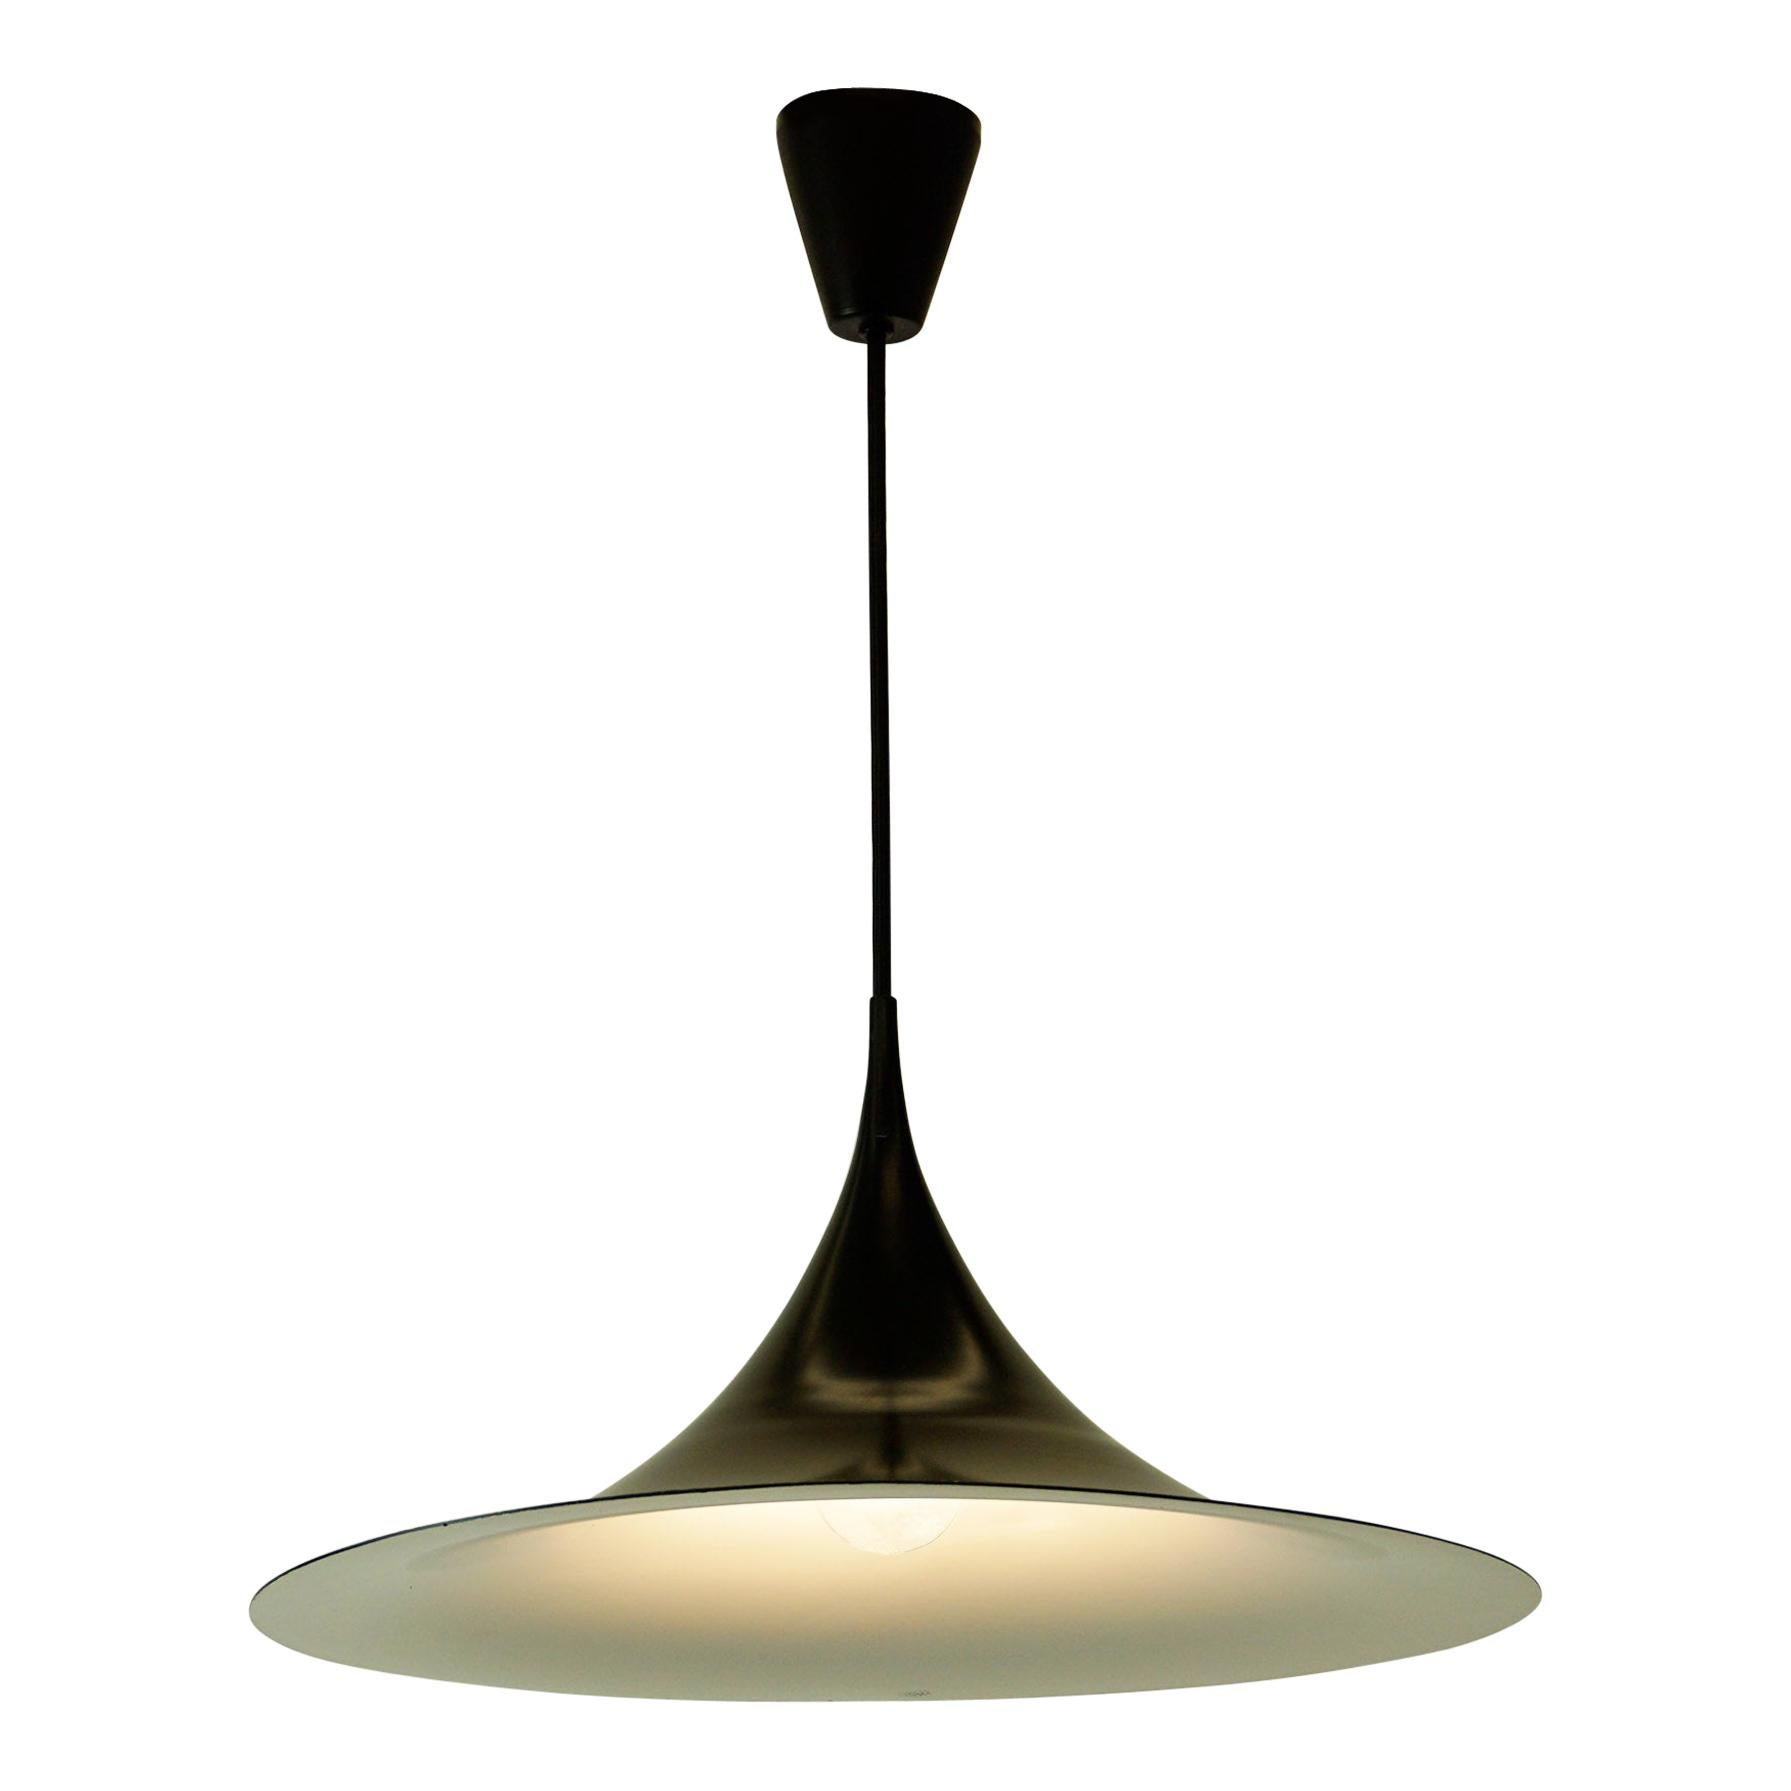 Scandinavian Modern Black Semi Pendant Lamp by Bonderup & Thorup for Fog & Mørup